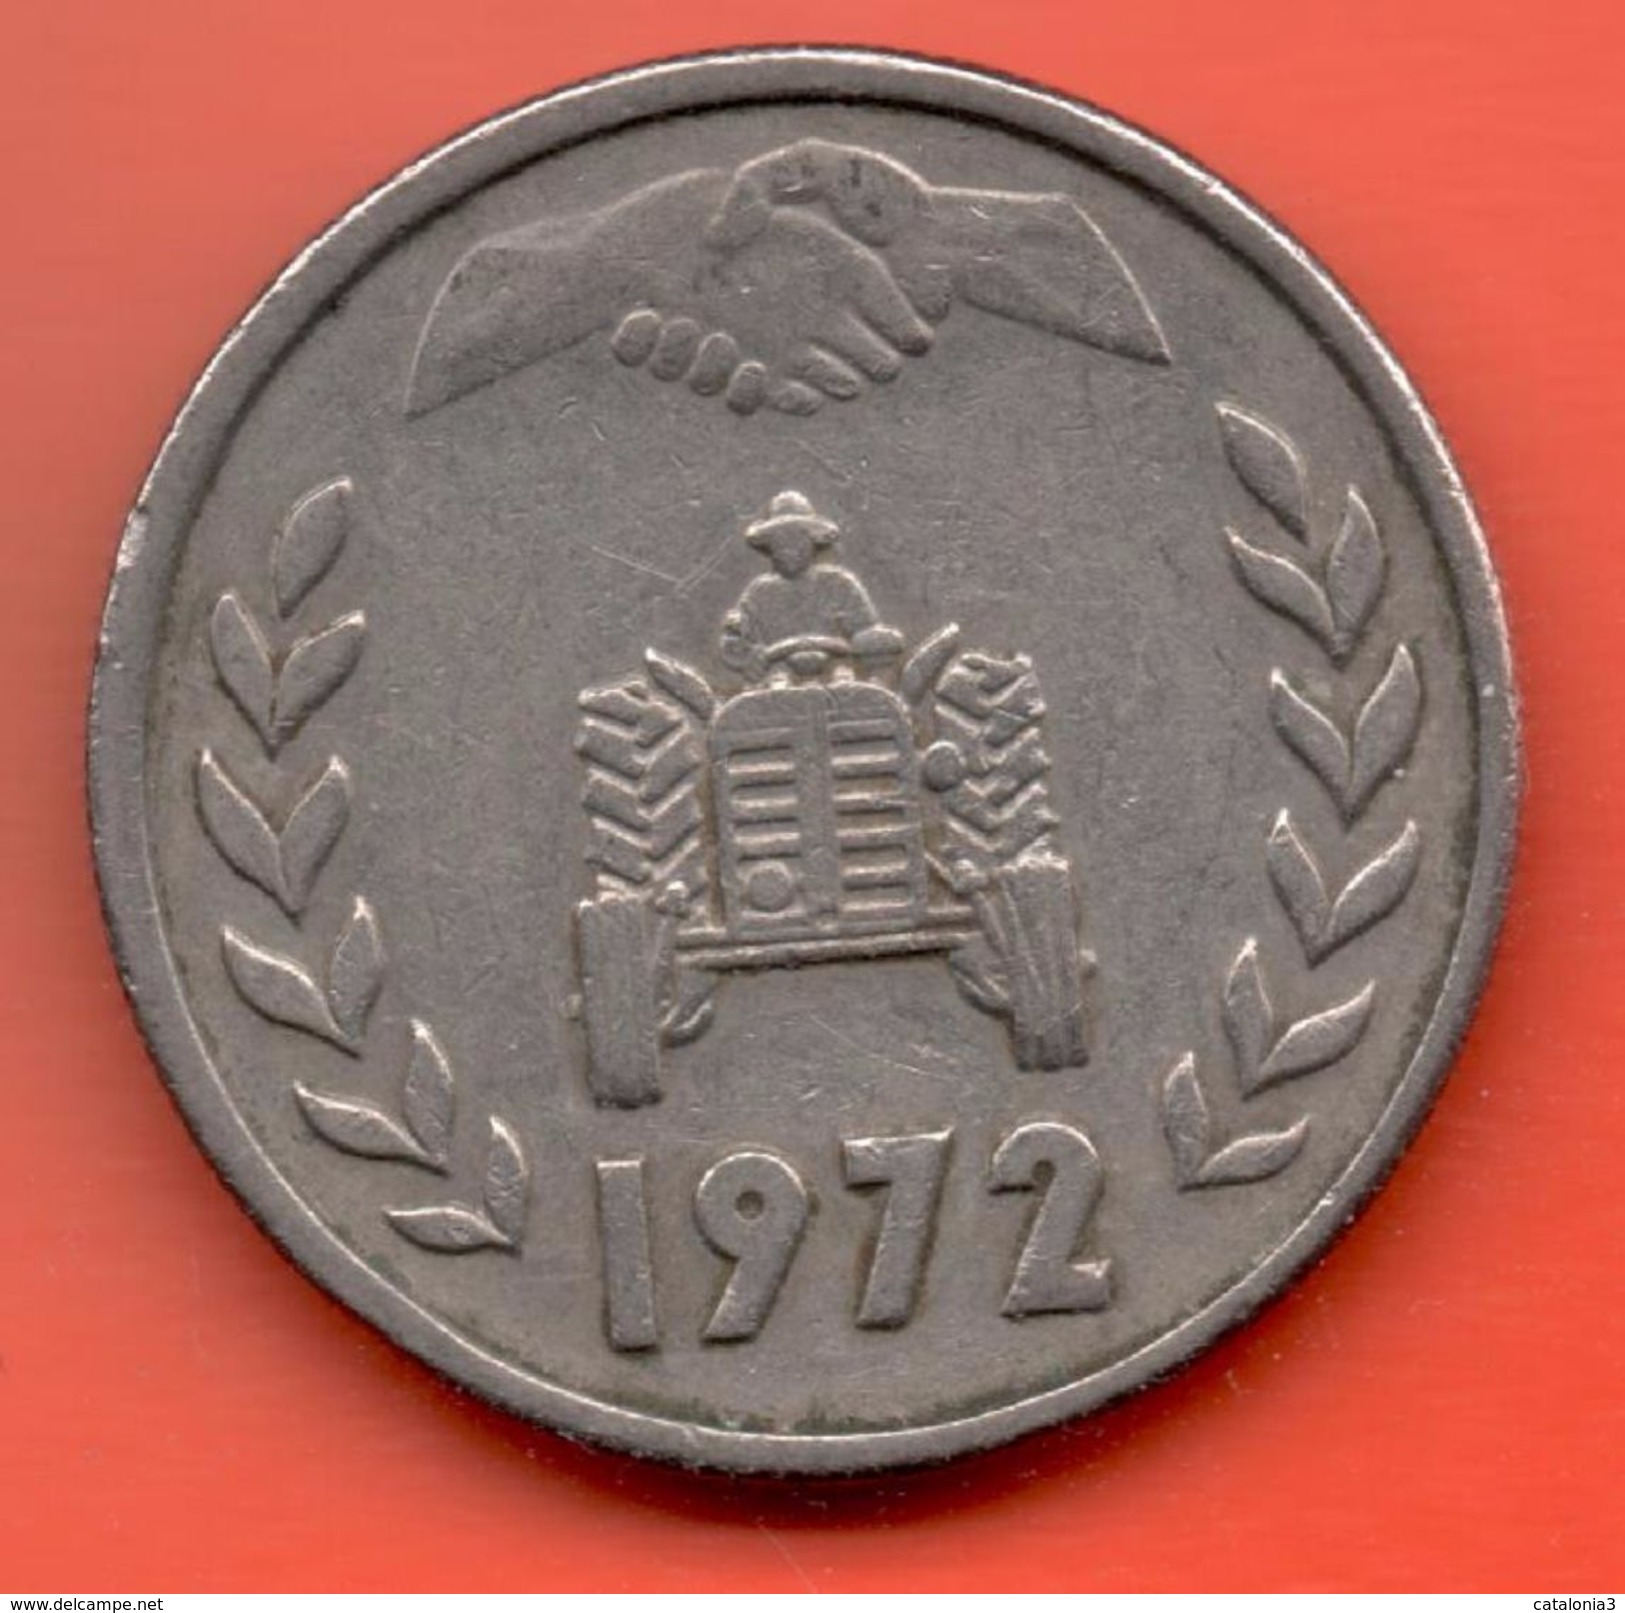 ARGELIA - ALGERIA = 1 DINAR 1972 - Algérie